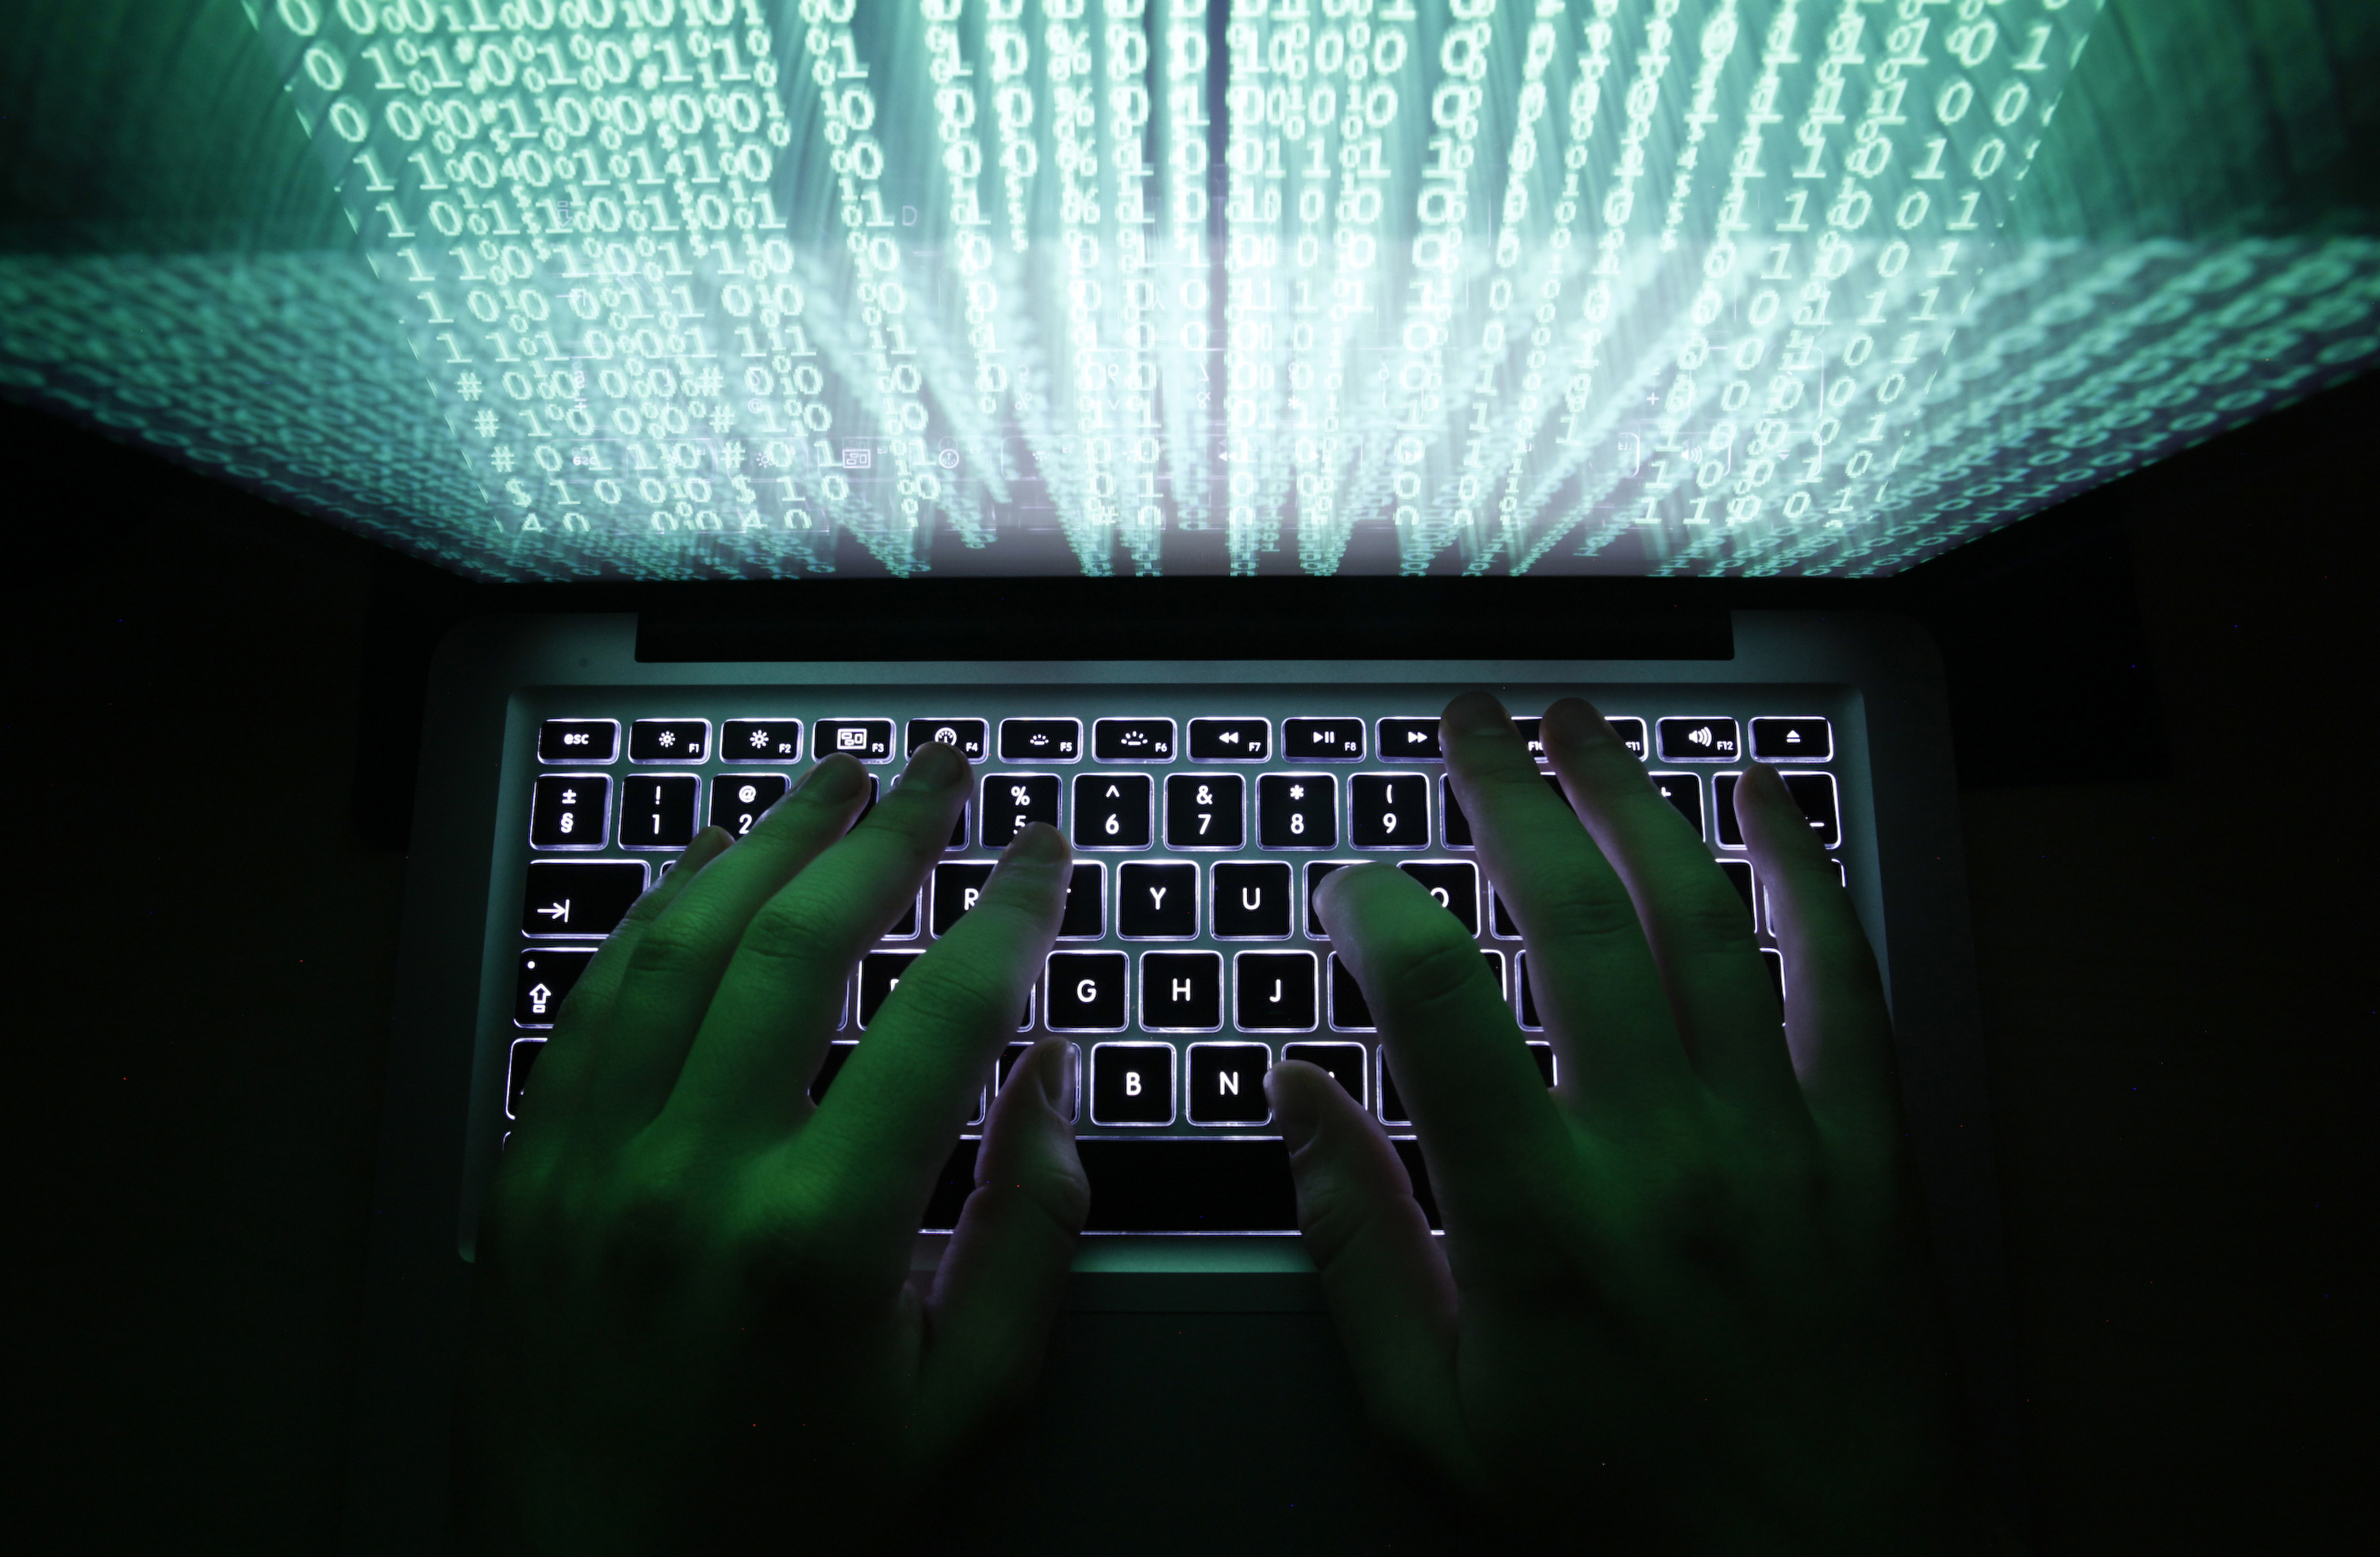  Temen en Estados Unidos ataque cibernético el día de las elecciones